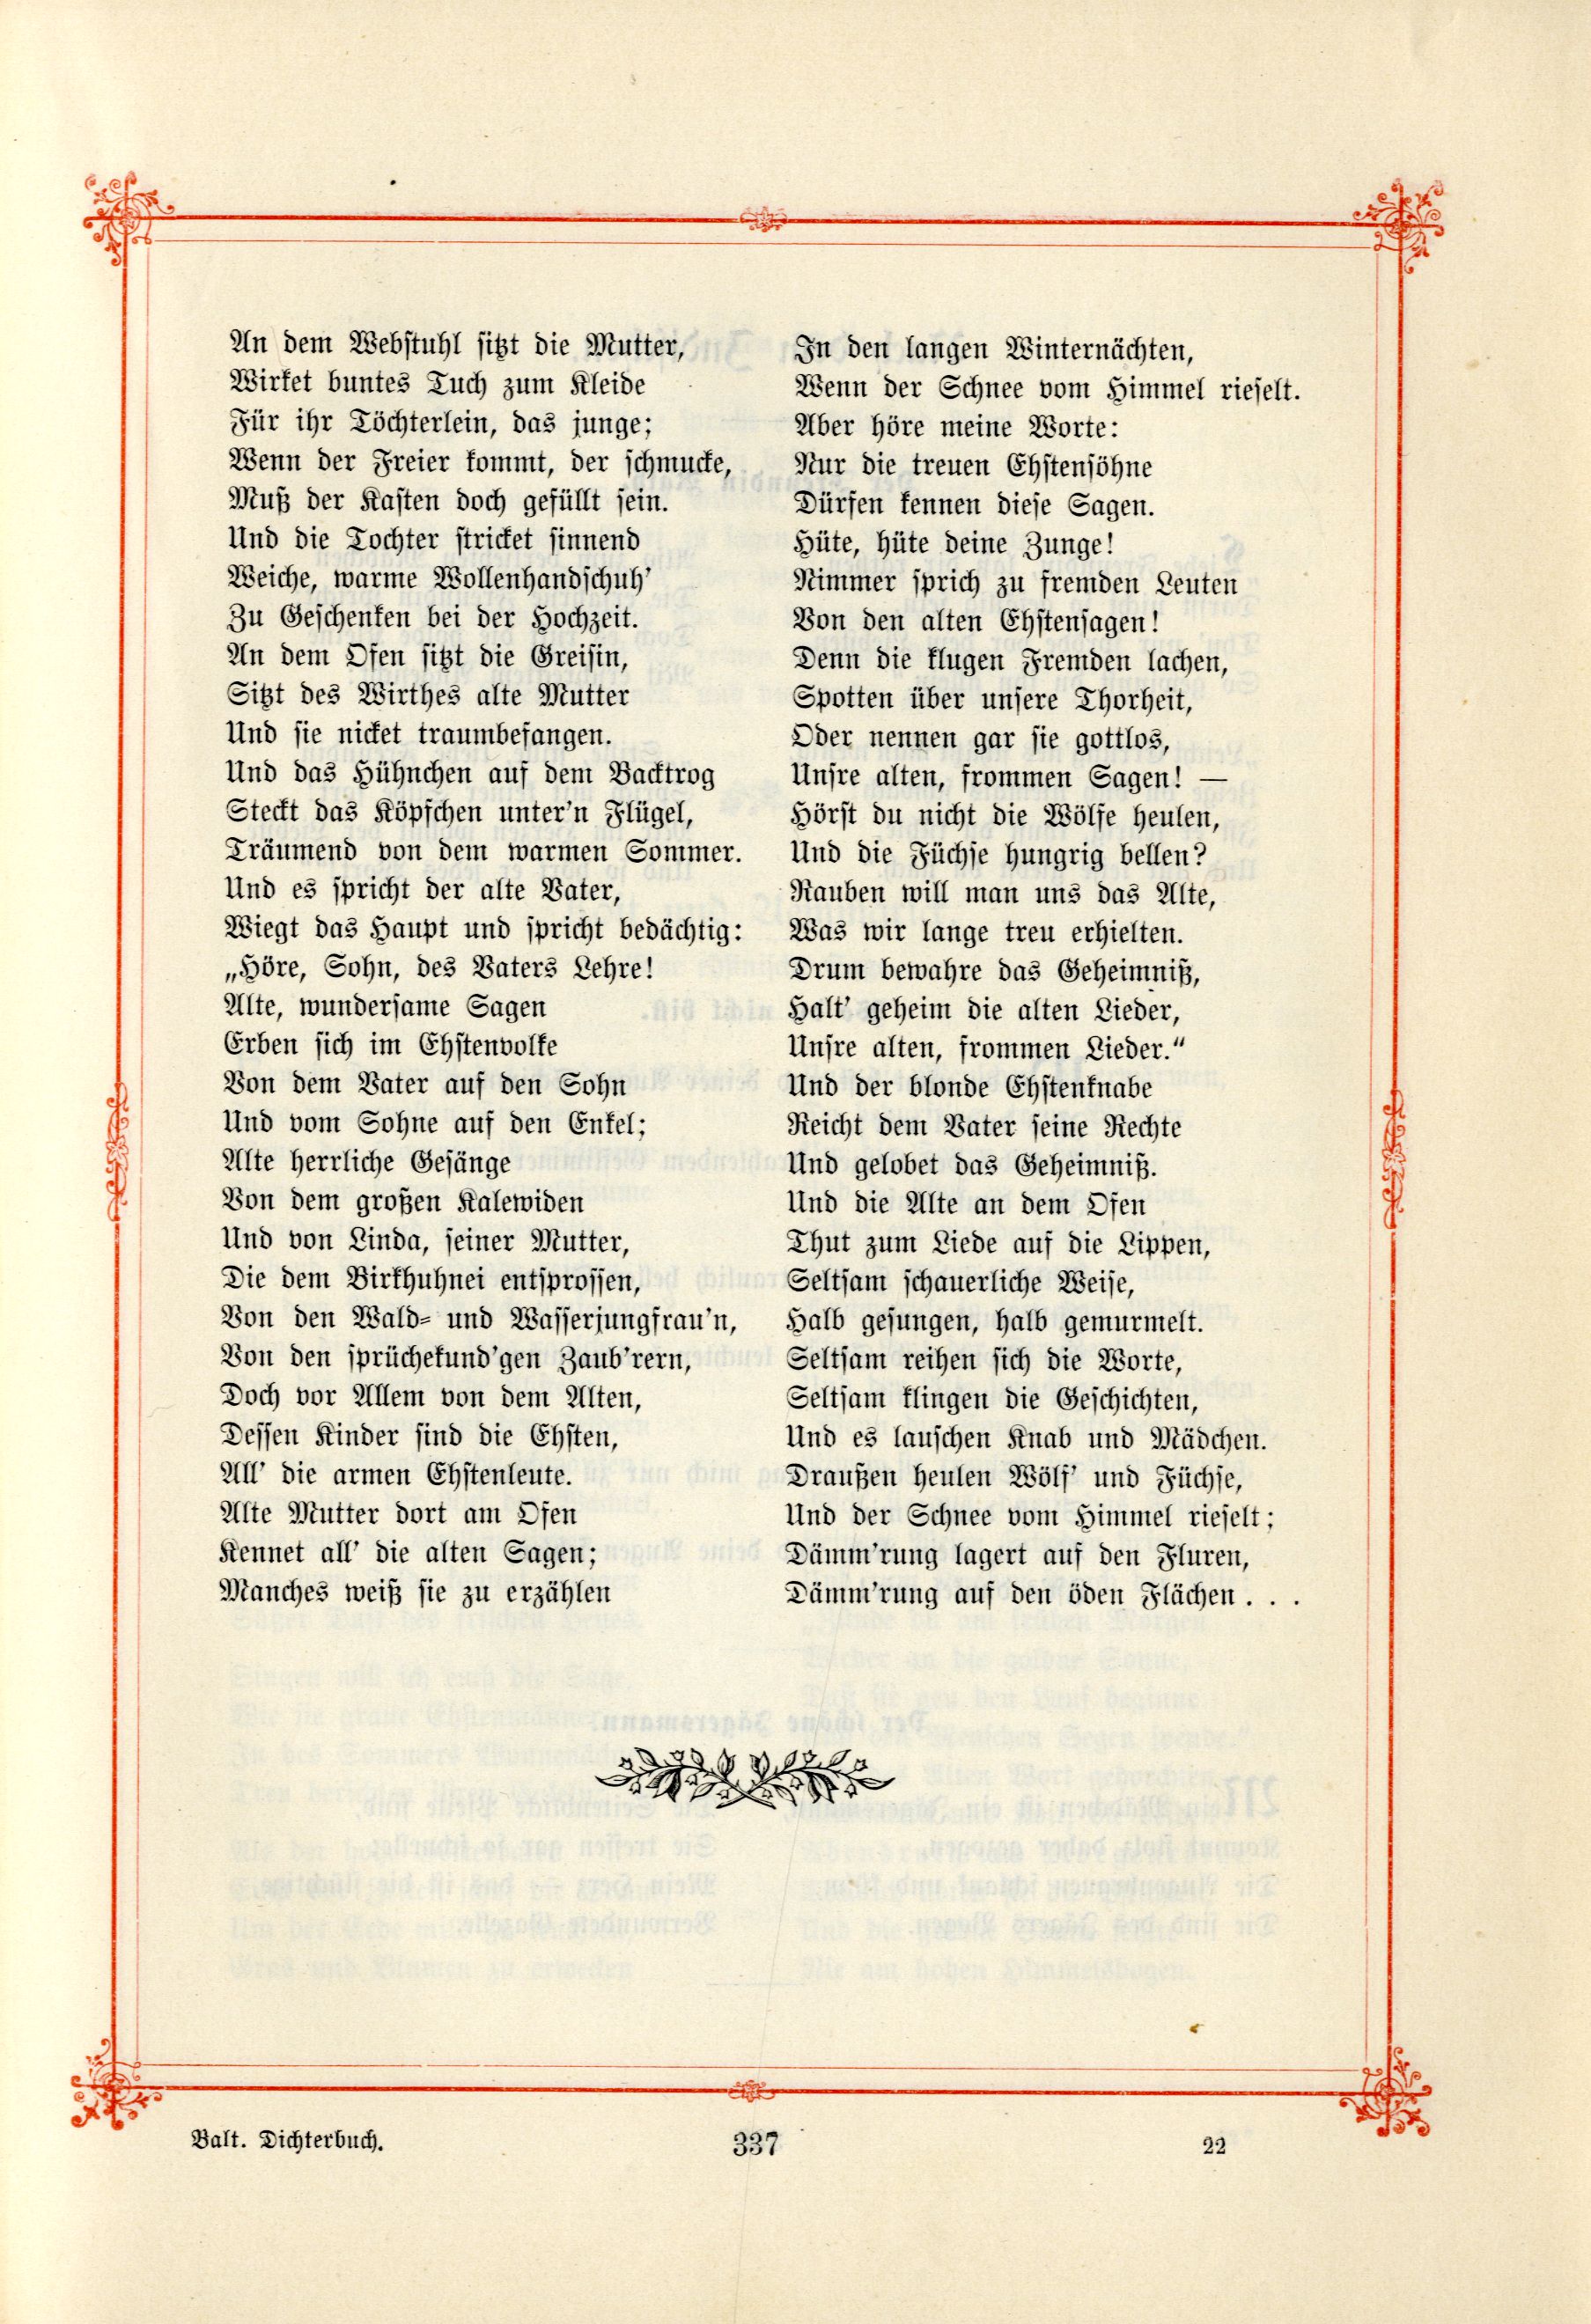 Das Baltische Dichterbuch (1895) | 383. (337) Main body of text